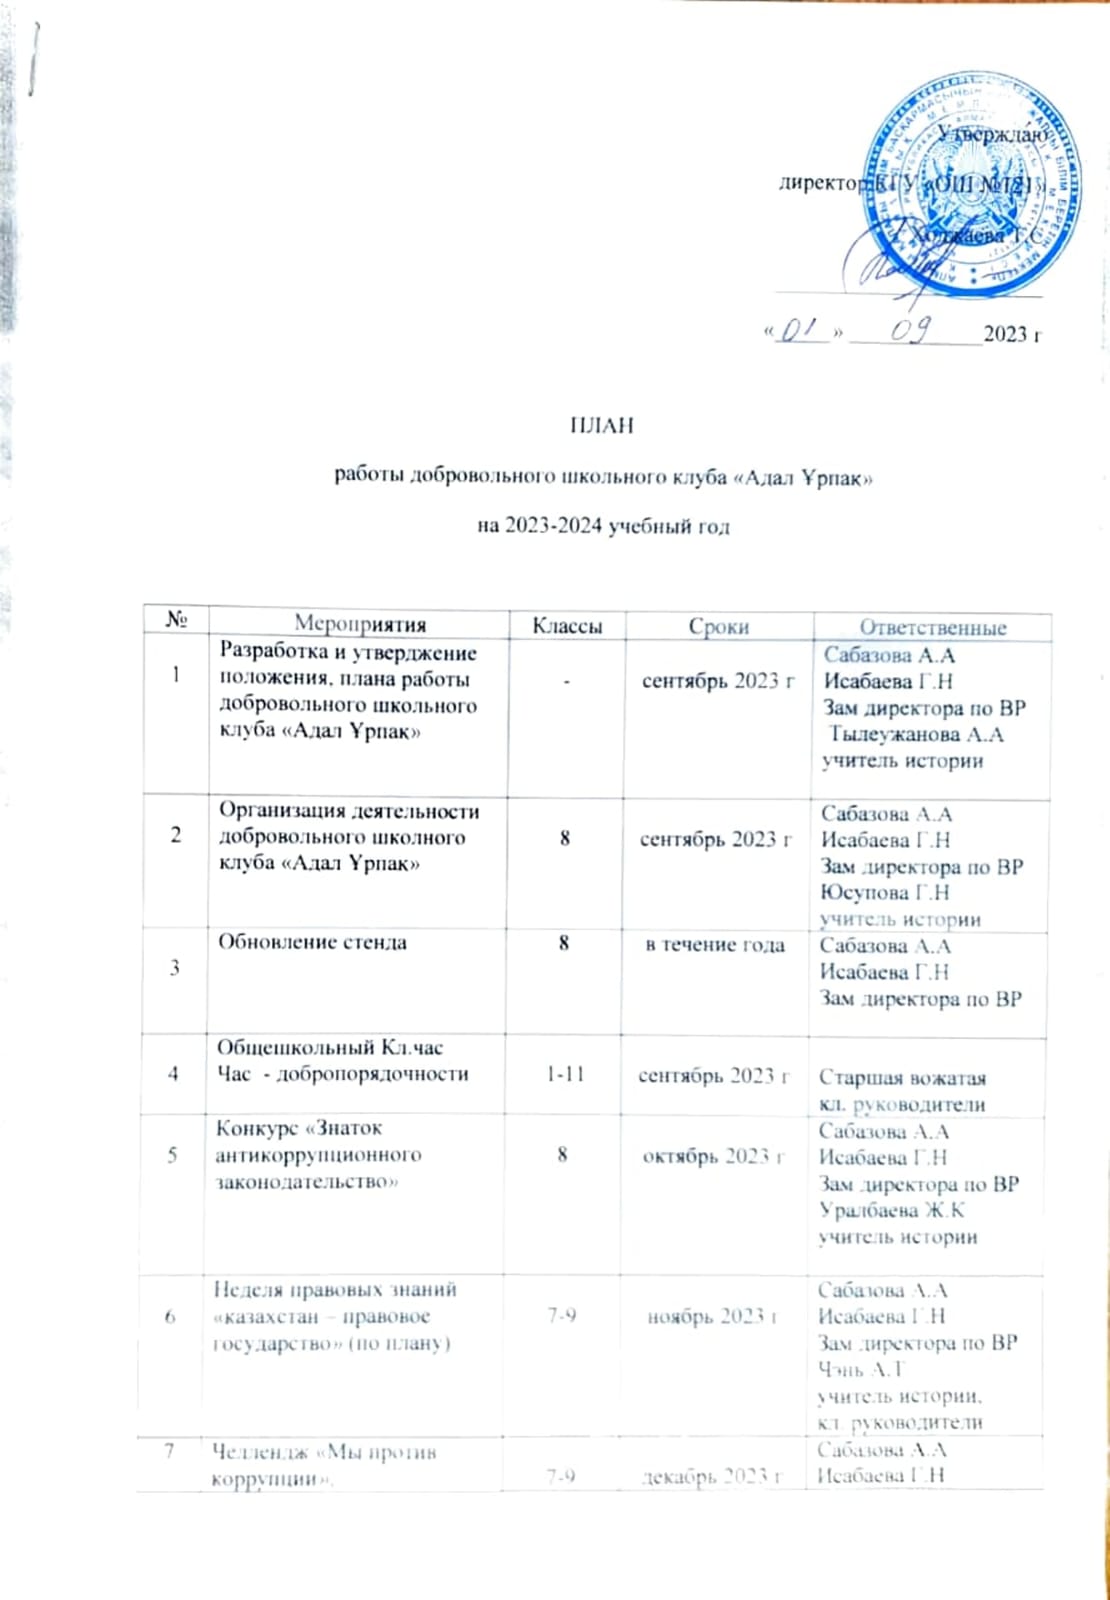 План работы добровольного школьного клуба "Адал ұрпақ" на 2023-2024 учебный год